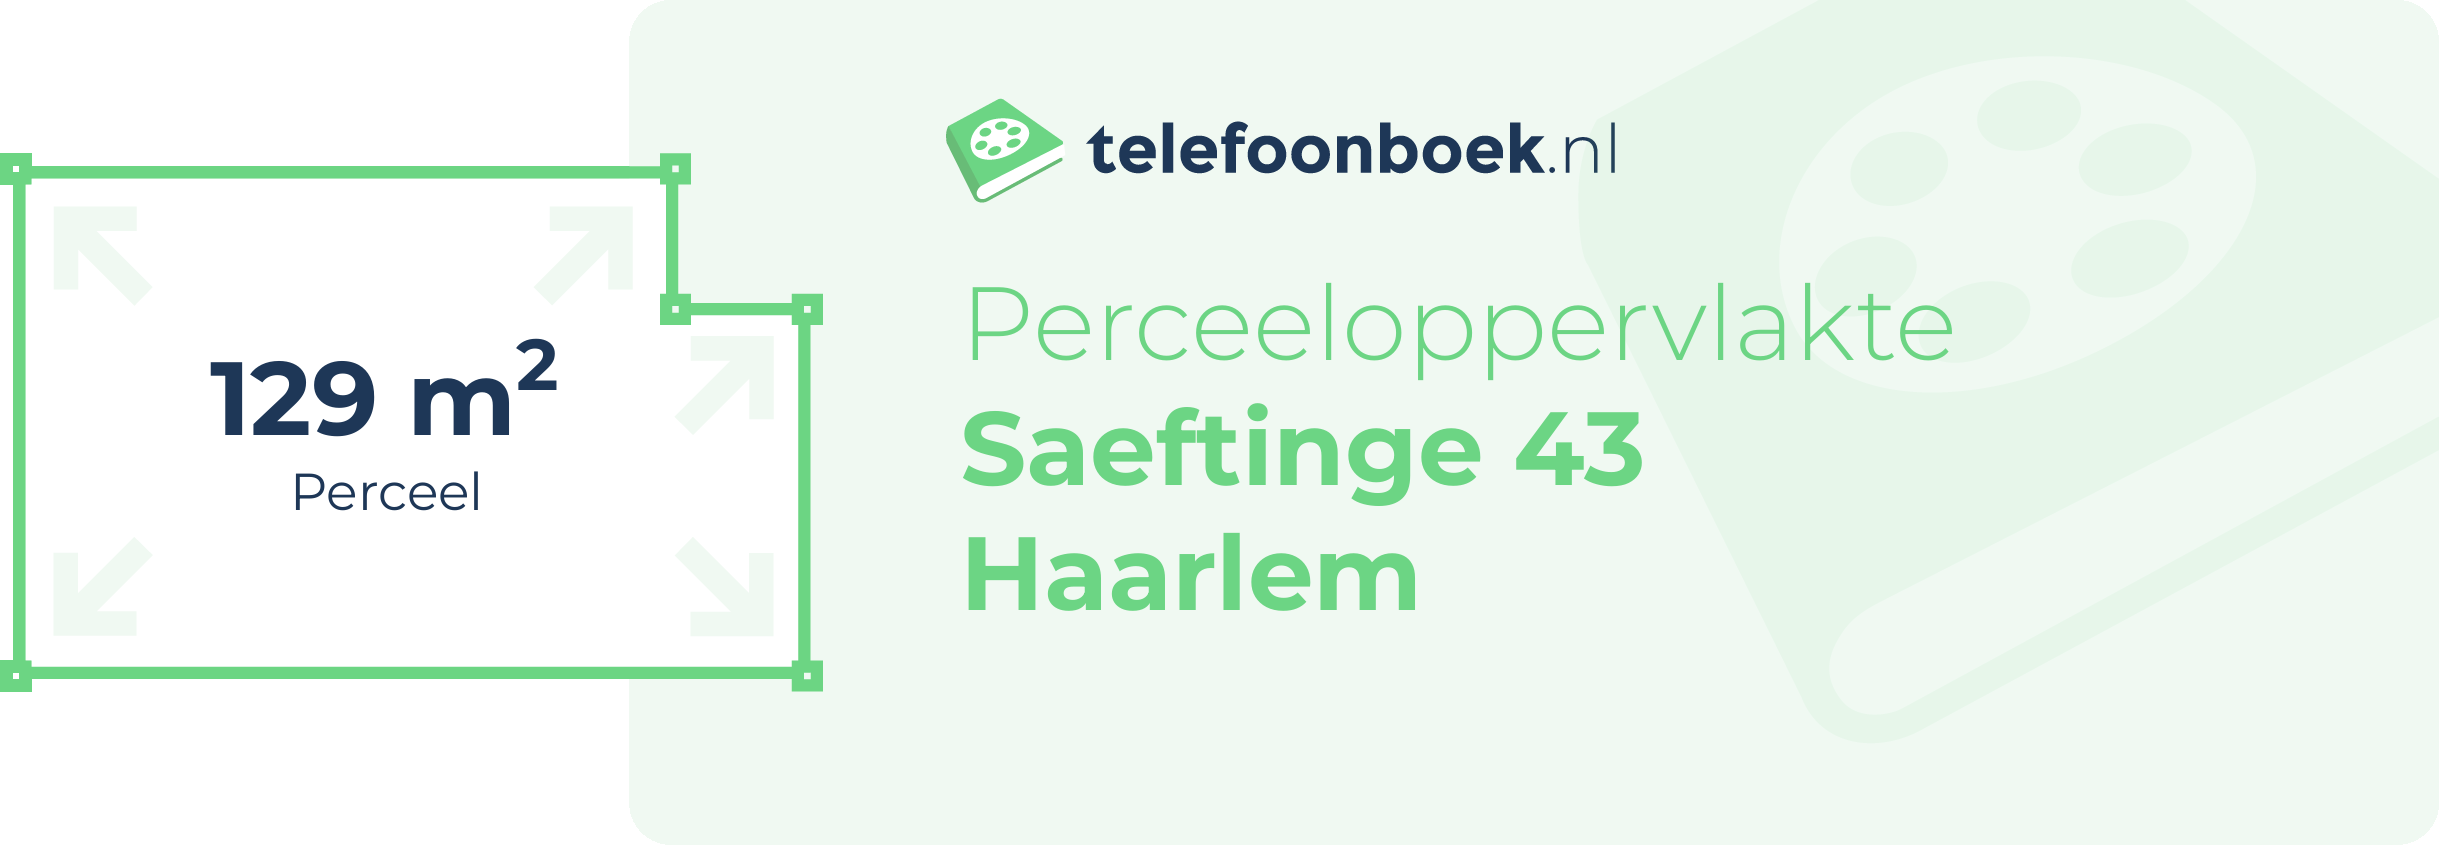 Perceeloppervlakte Saeftinge 43 Haarlem